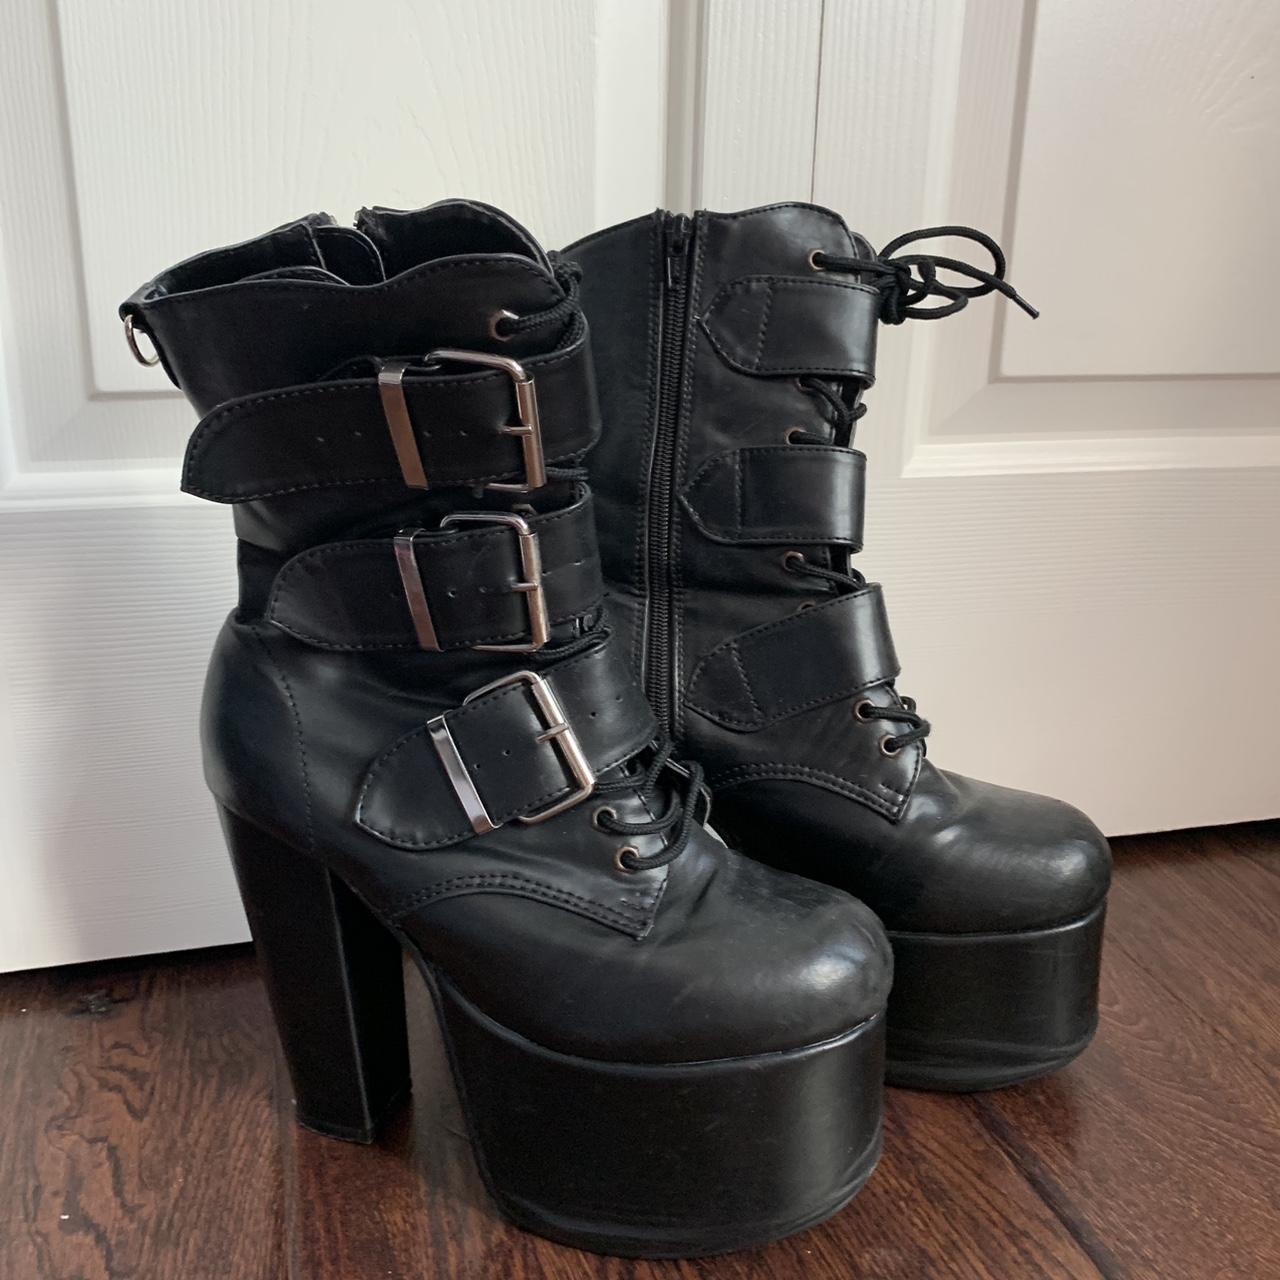 black high heel (calf high) boots, zip up,... - Depop